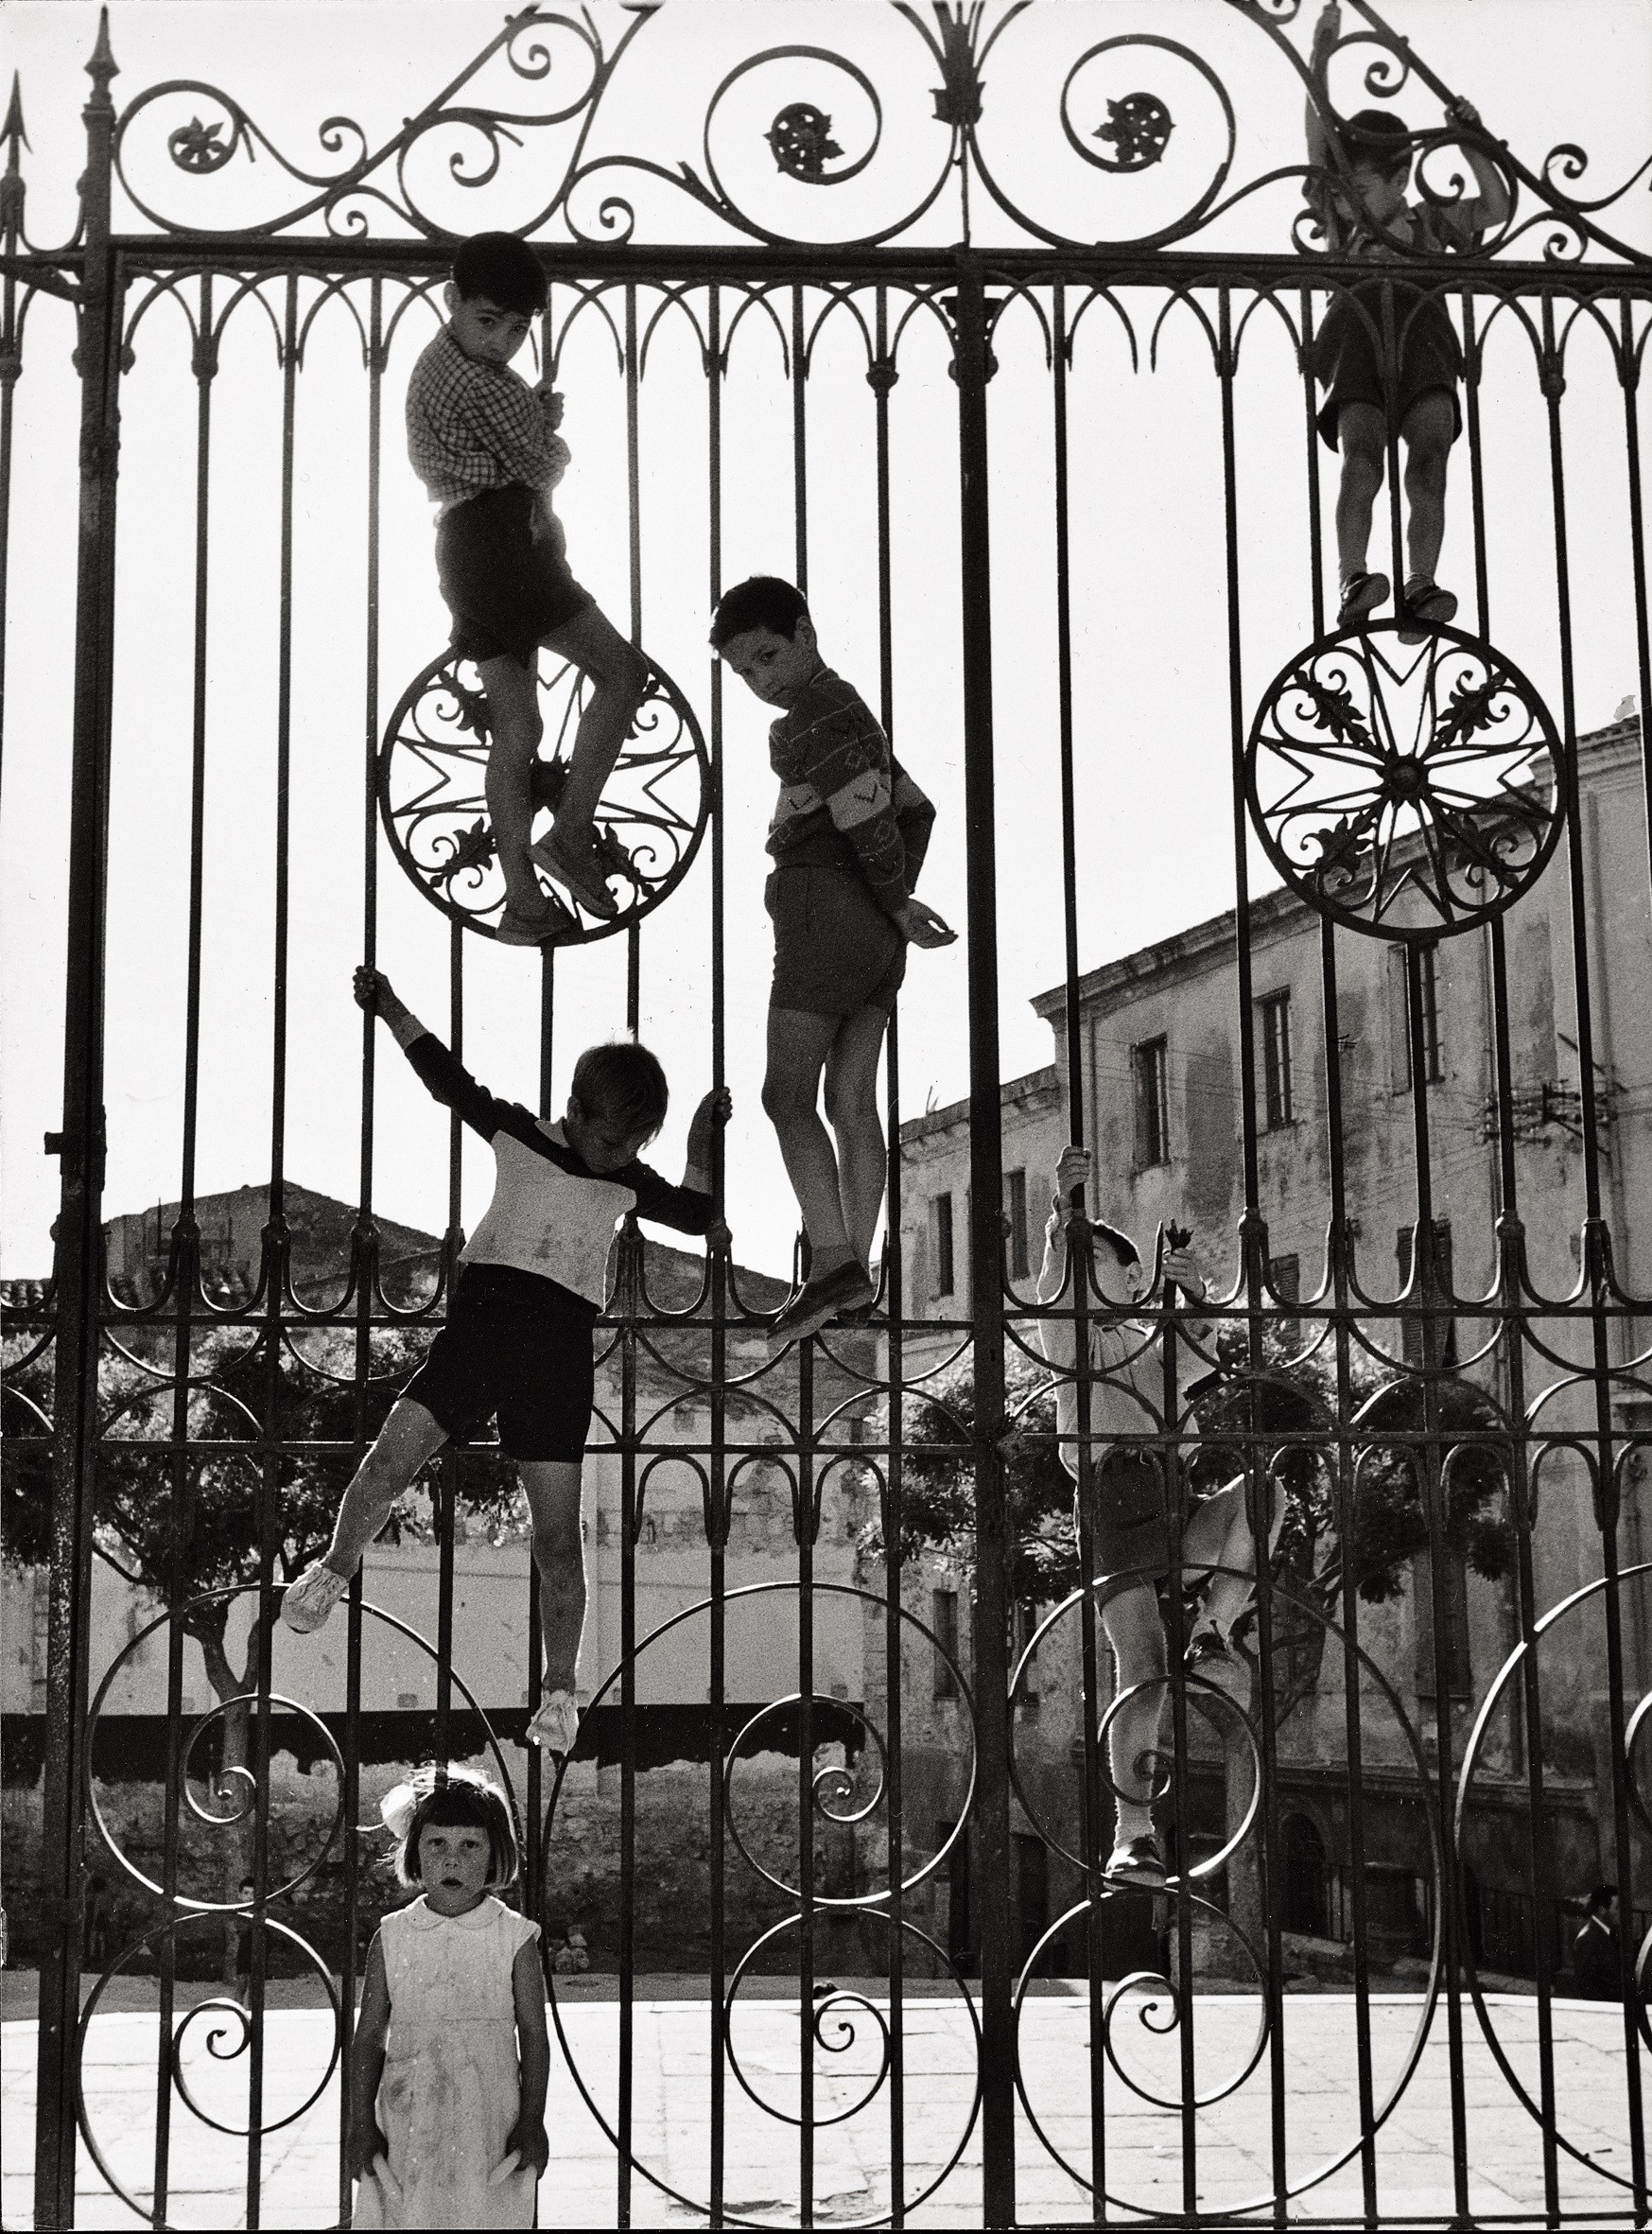 Сассари, Сардиния, 1955. Фотограф Марио Де Бьязи